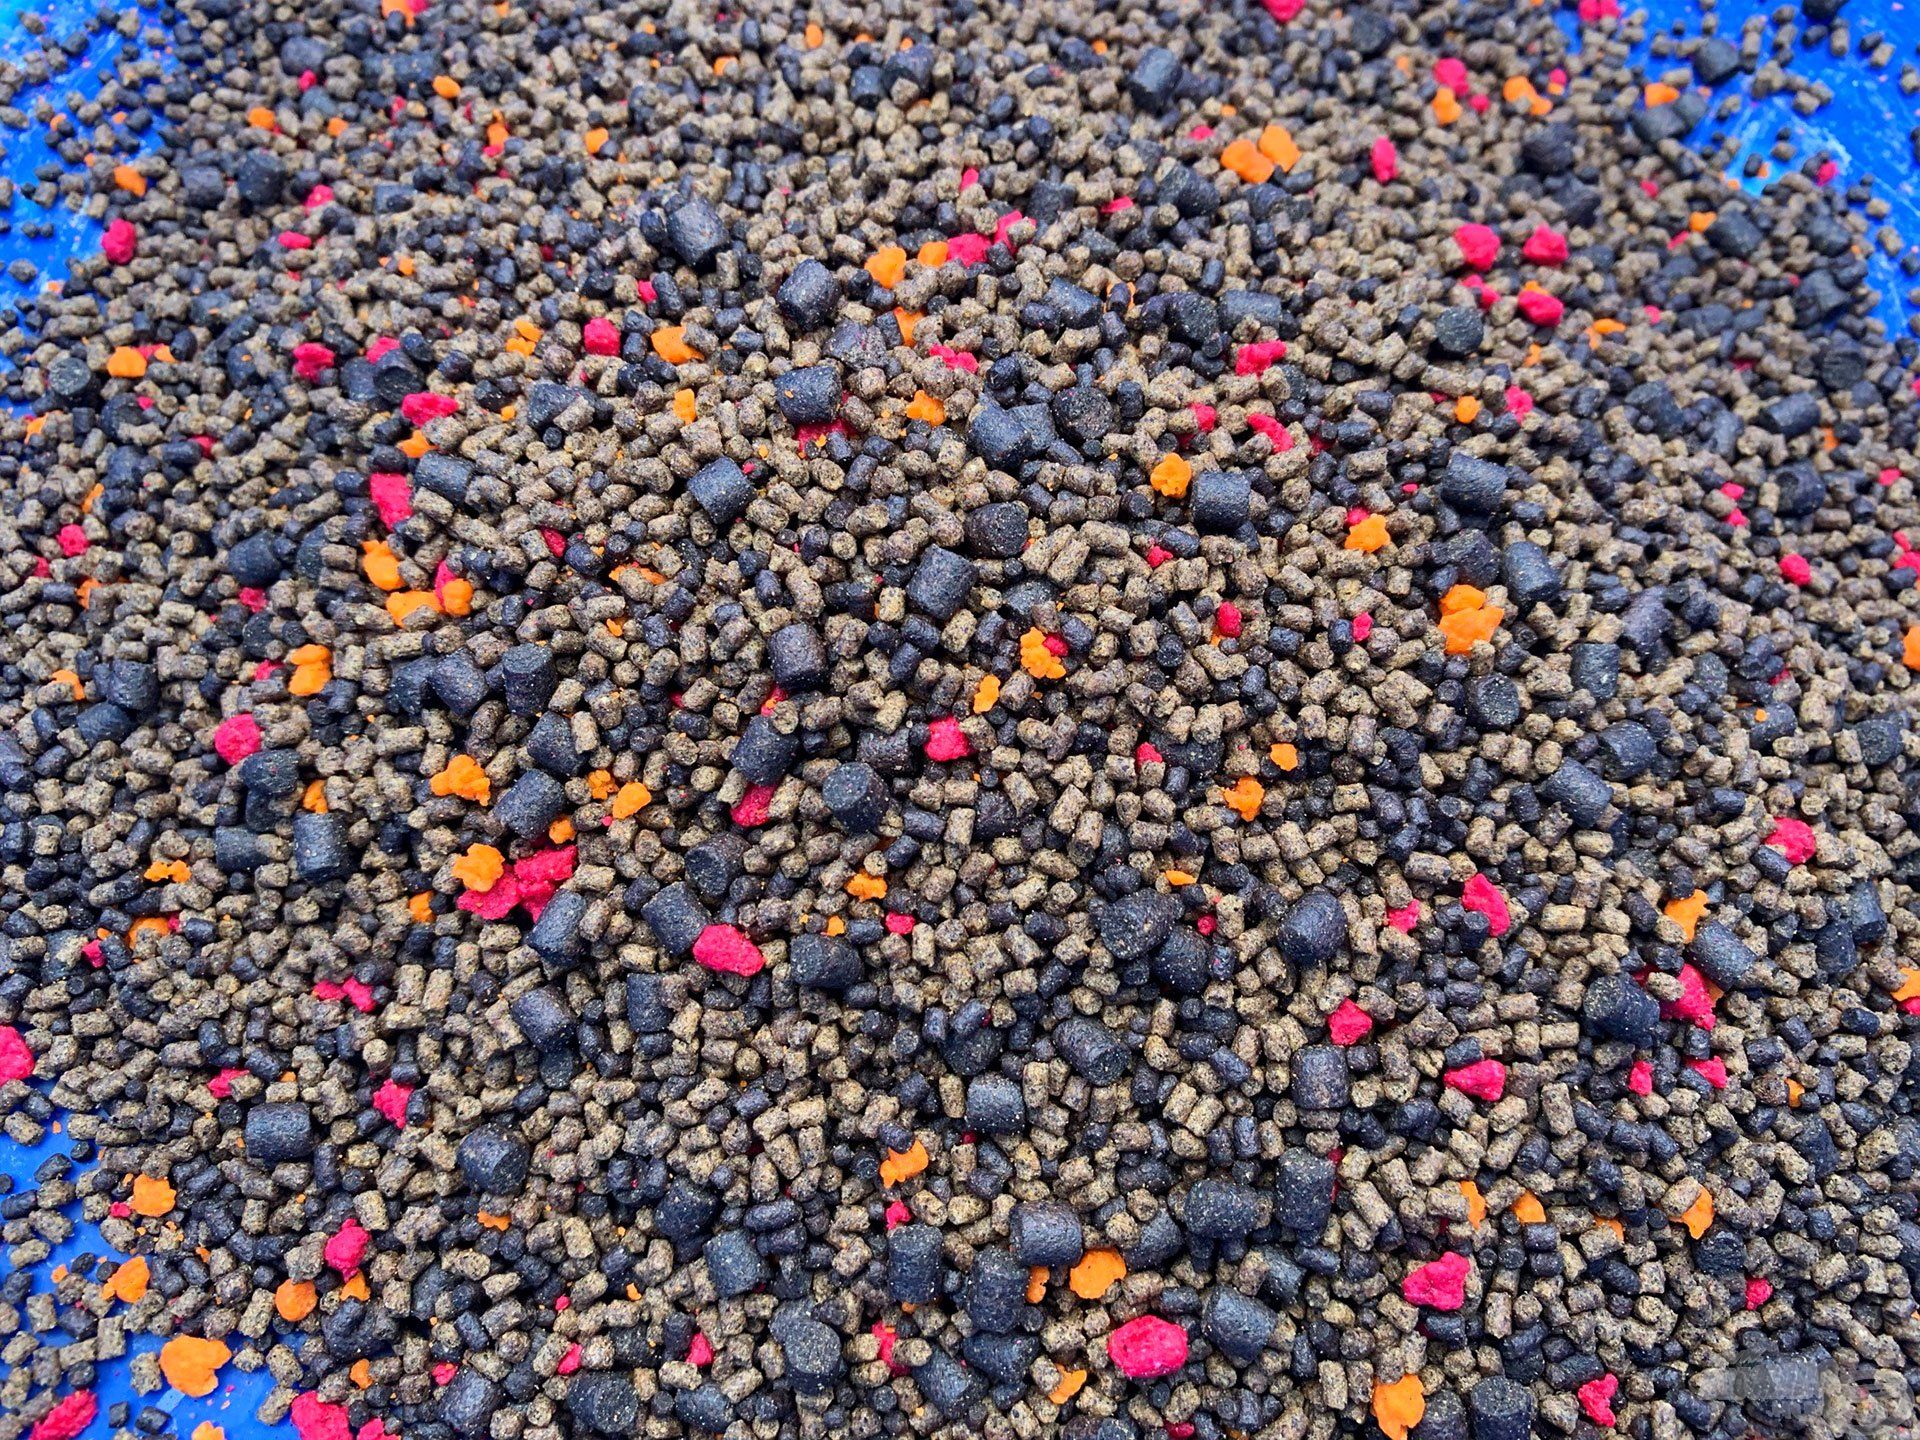 Az őszi method pellet mix tartalmaz sárga, piros morzsát, illetve pár nagyobb pelletet is